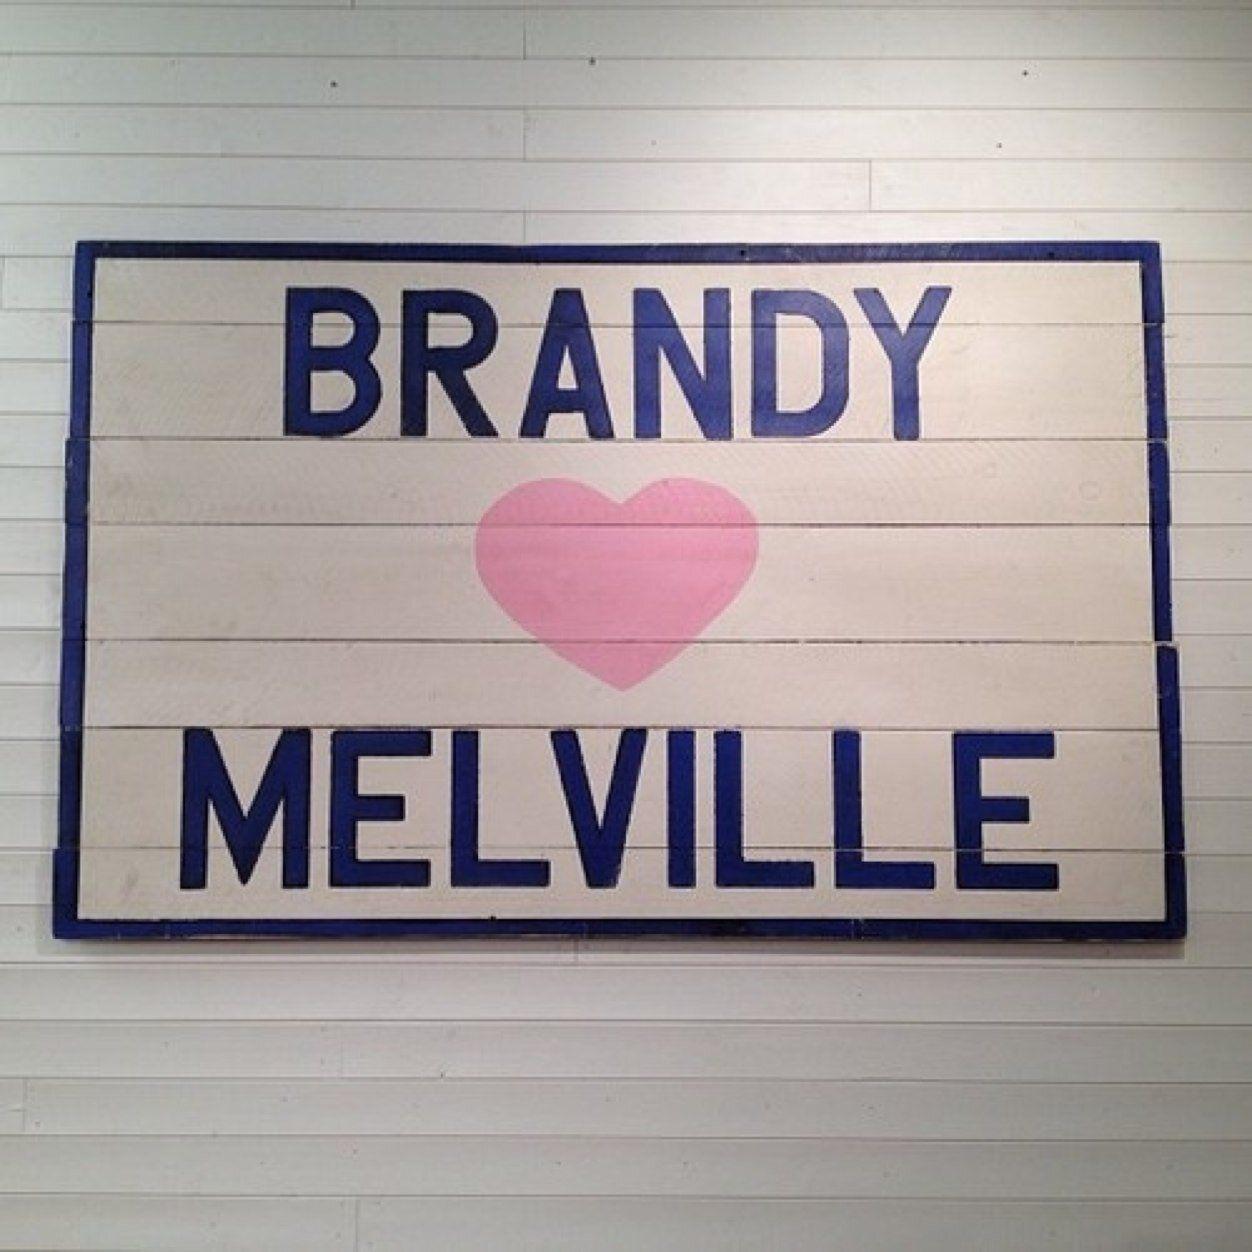 Brandy Melville Logo - Brandy Models USA on Twitter: 